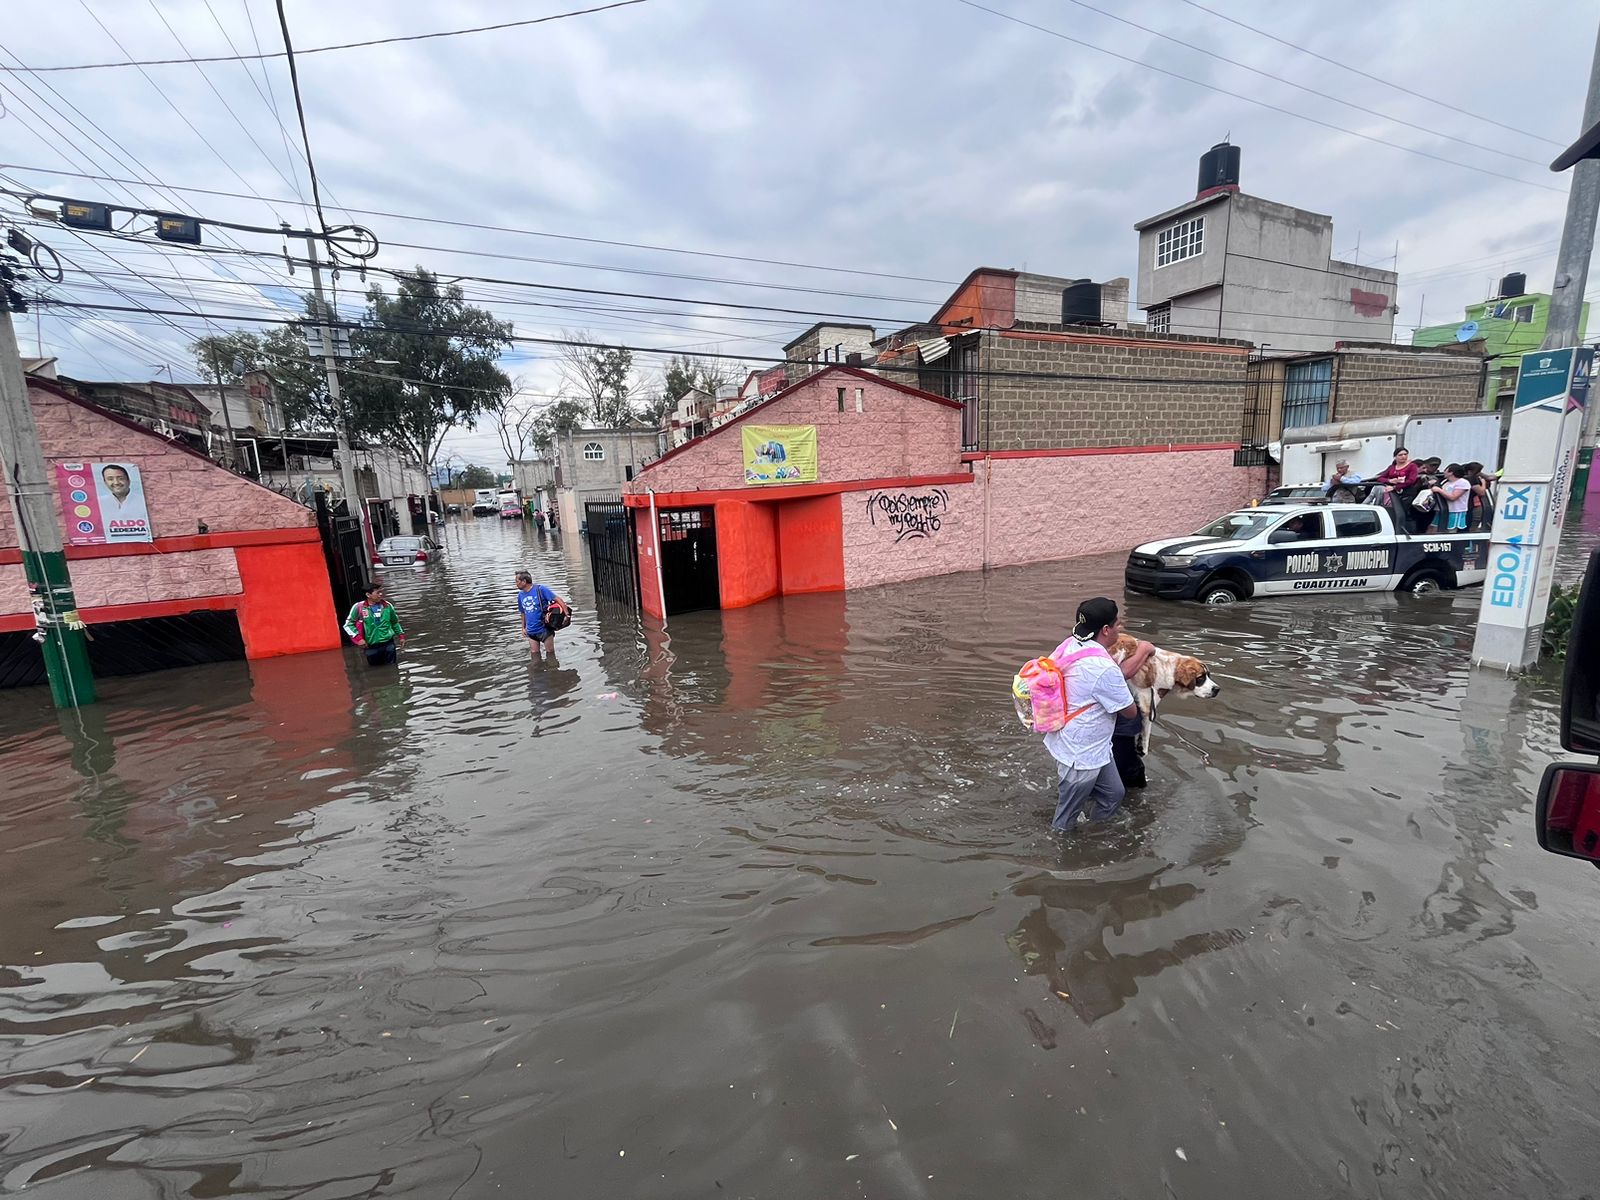 Miles de personas se han visto afectadas por las inundaciones. Vecinos aseguran que esto ocurrió debido a la construcción de unas bodegas cercanas y afectaron al canal de aguas. (Foto: Arturo Contreras)